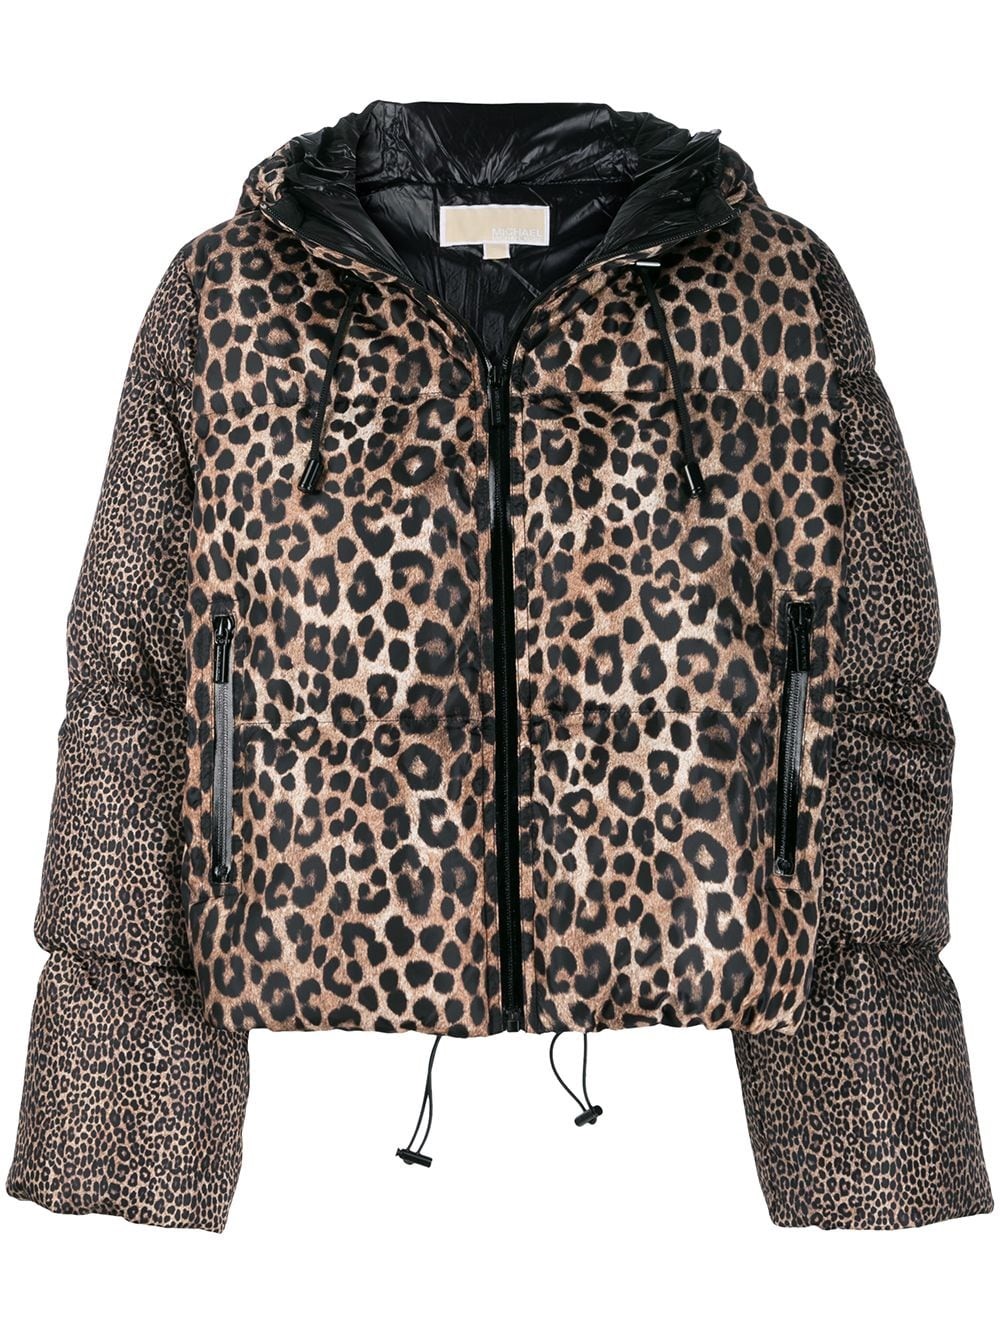 michael kors leopard print coat